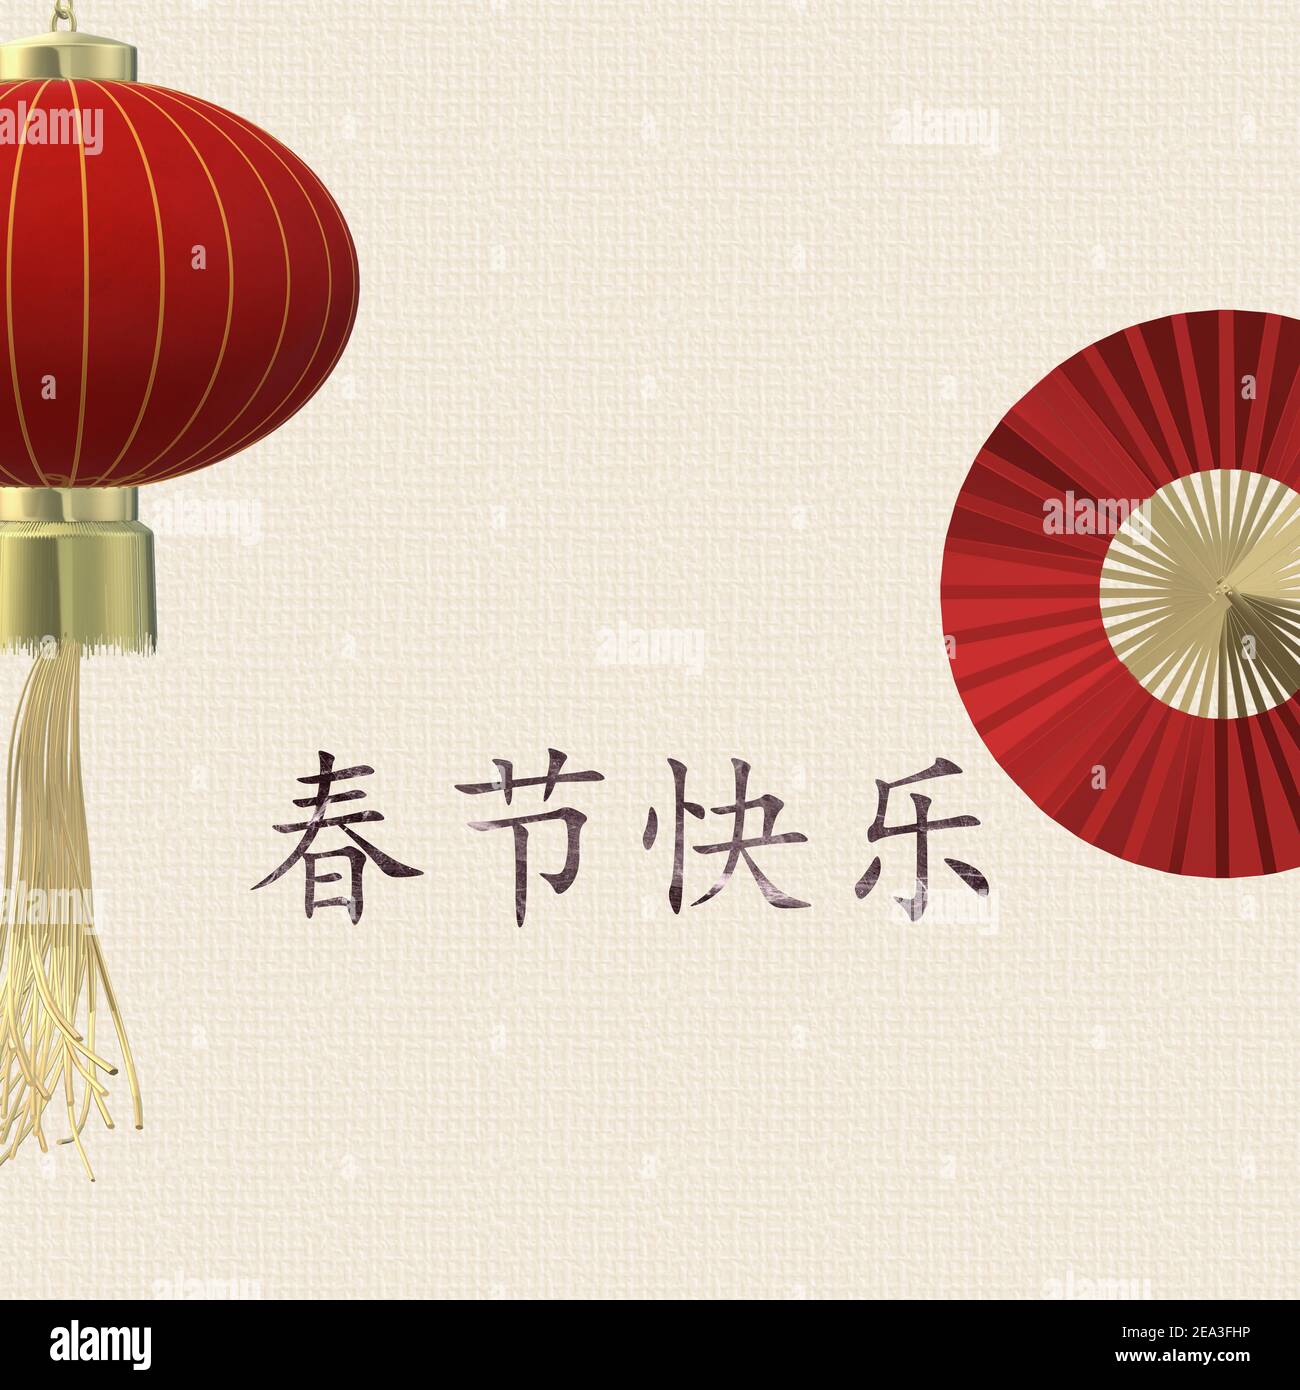 Modèle avec ventilateurs en papier, lanterne chinoise sur fond jaune pastel, nouvel an chinois, arrière-plan. Texte doré traduction en chinois Bonne Année. 3 Banque D'Images